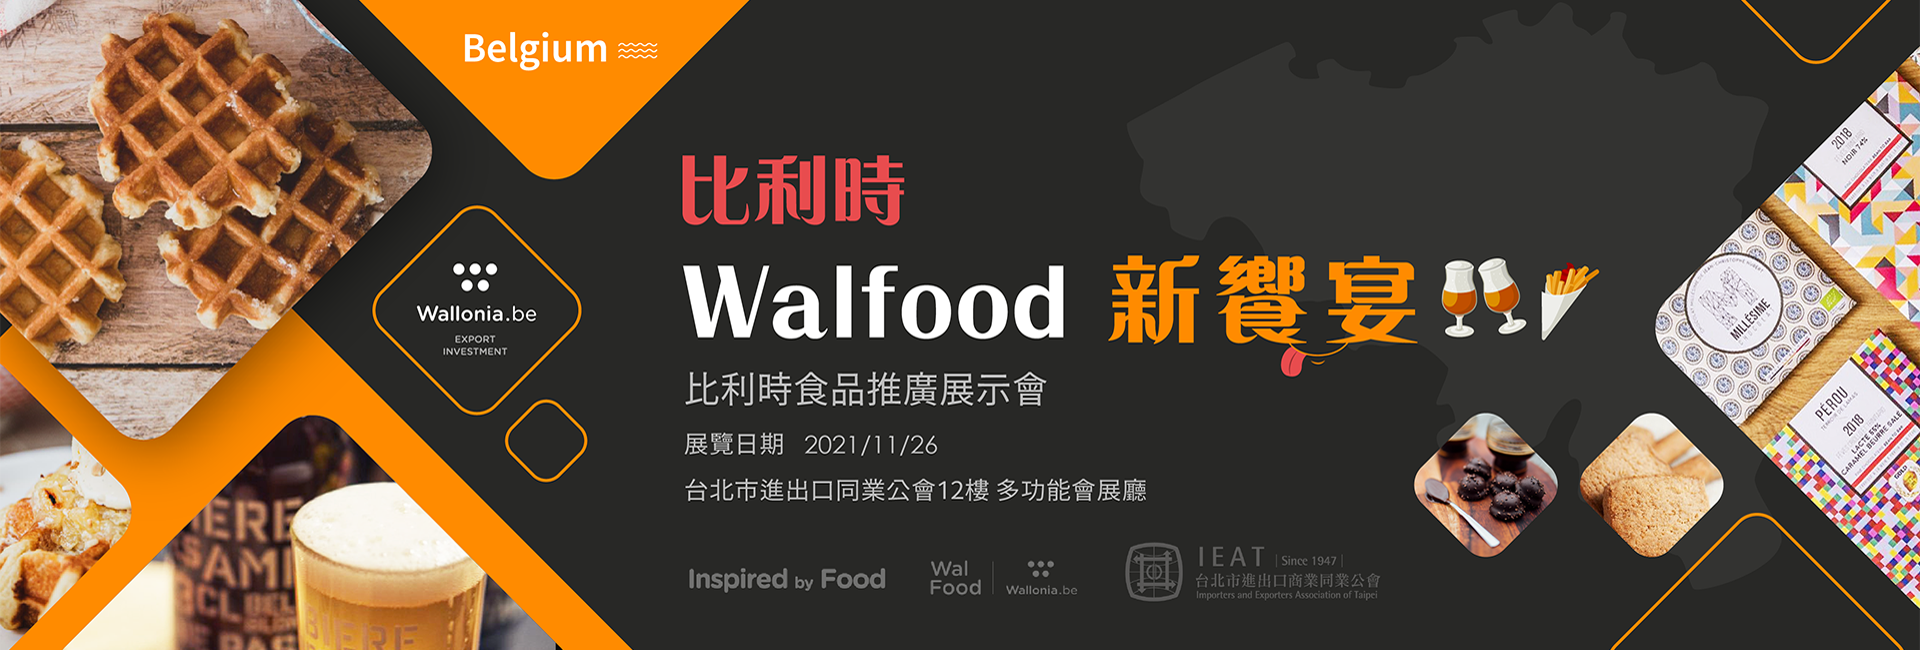 2021年比利時食品推廣展示會—Walfood新饗宴